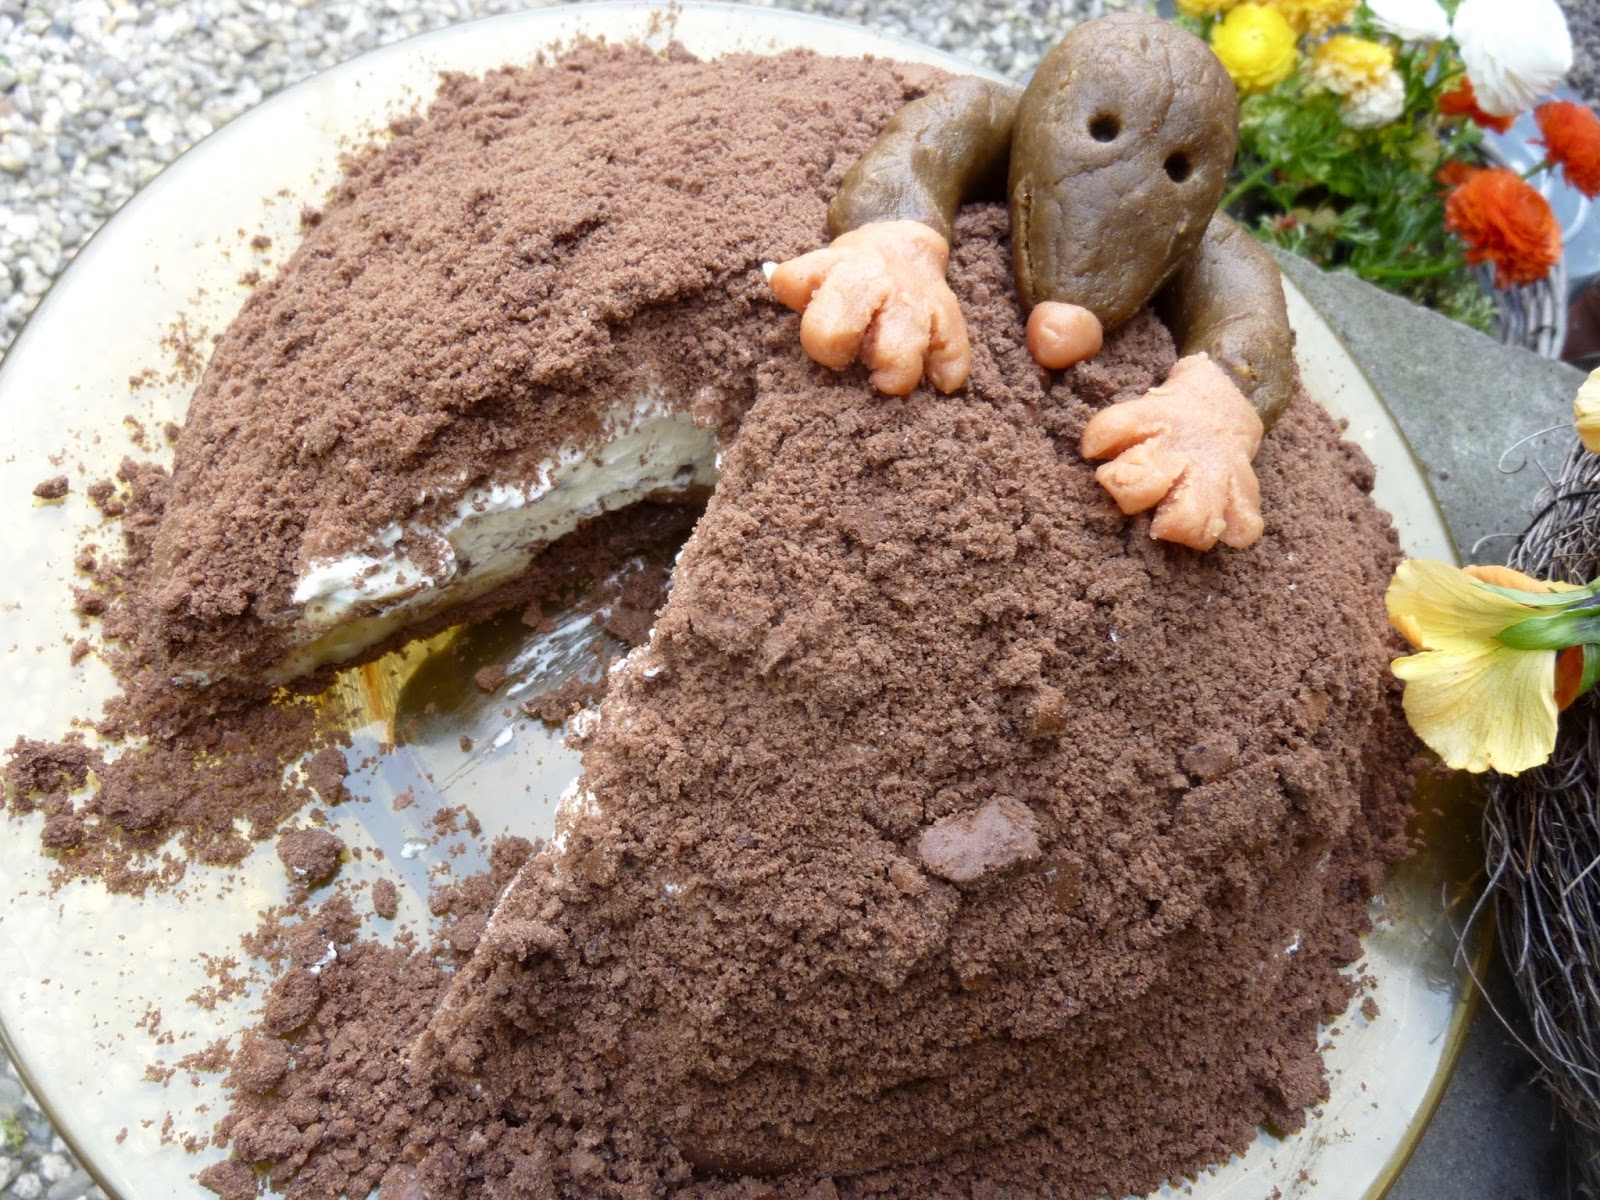 How To Make A Mole Cake